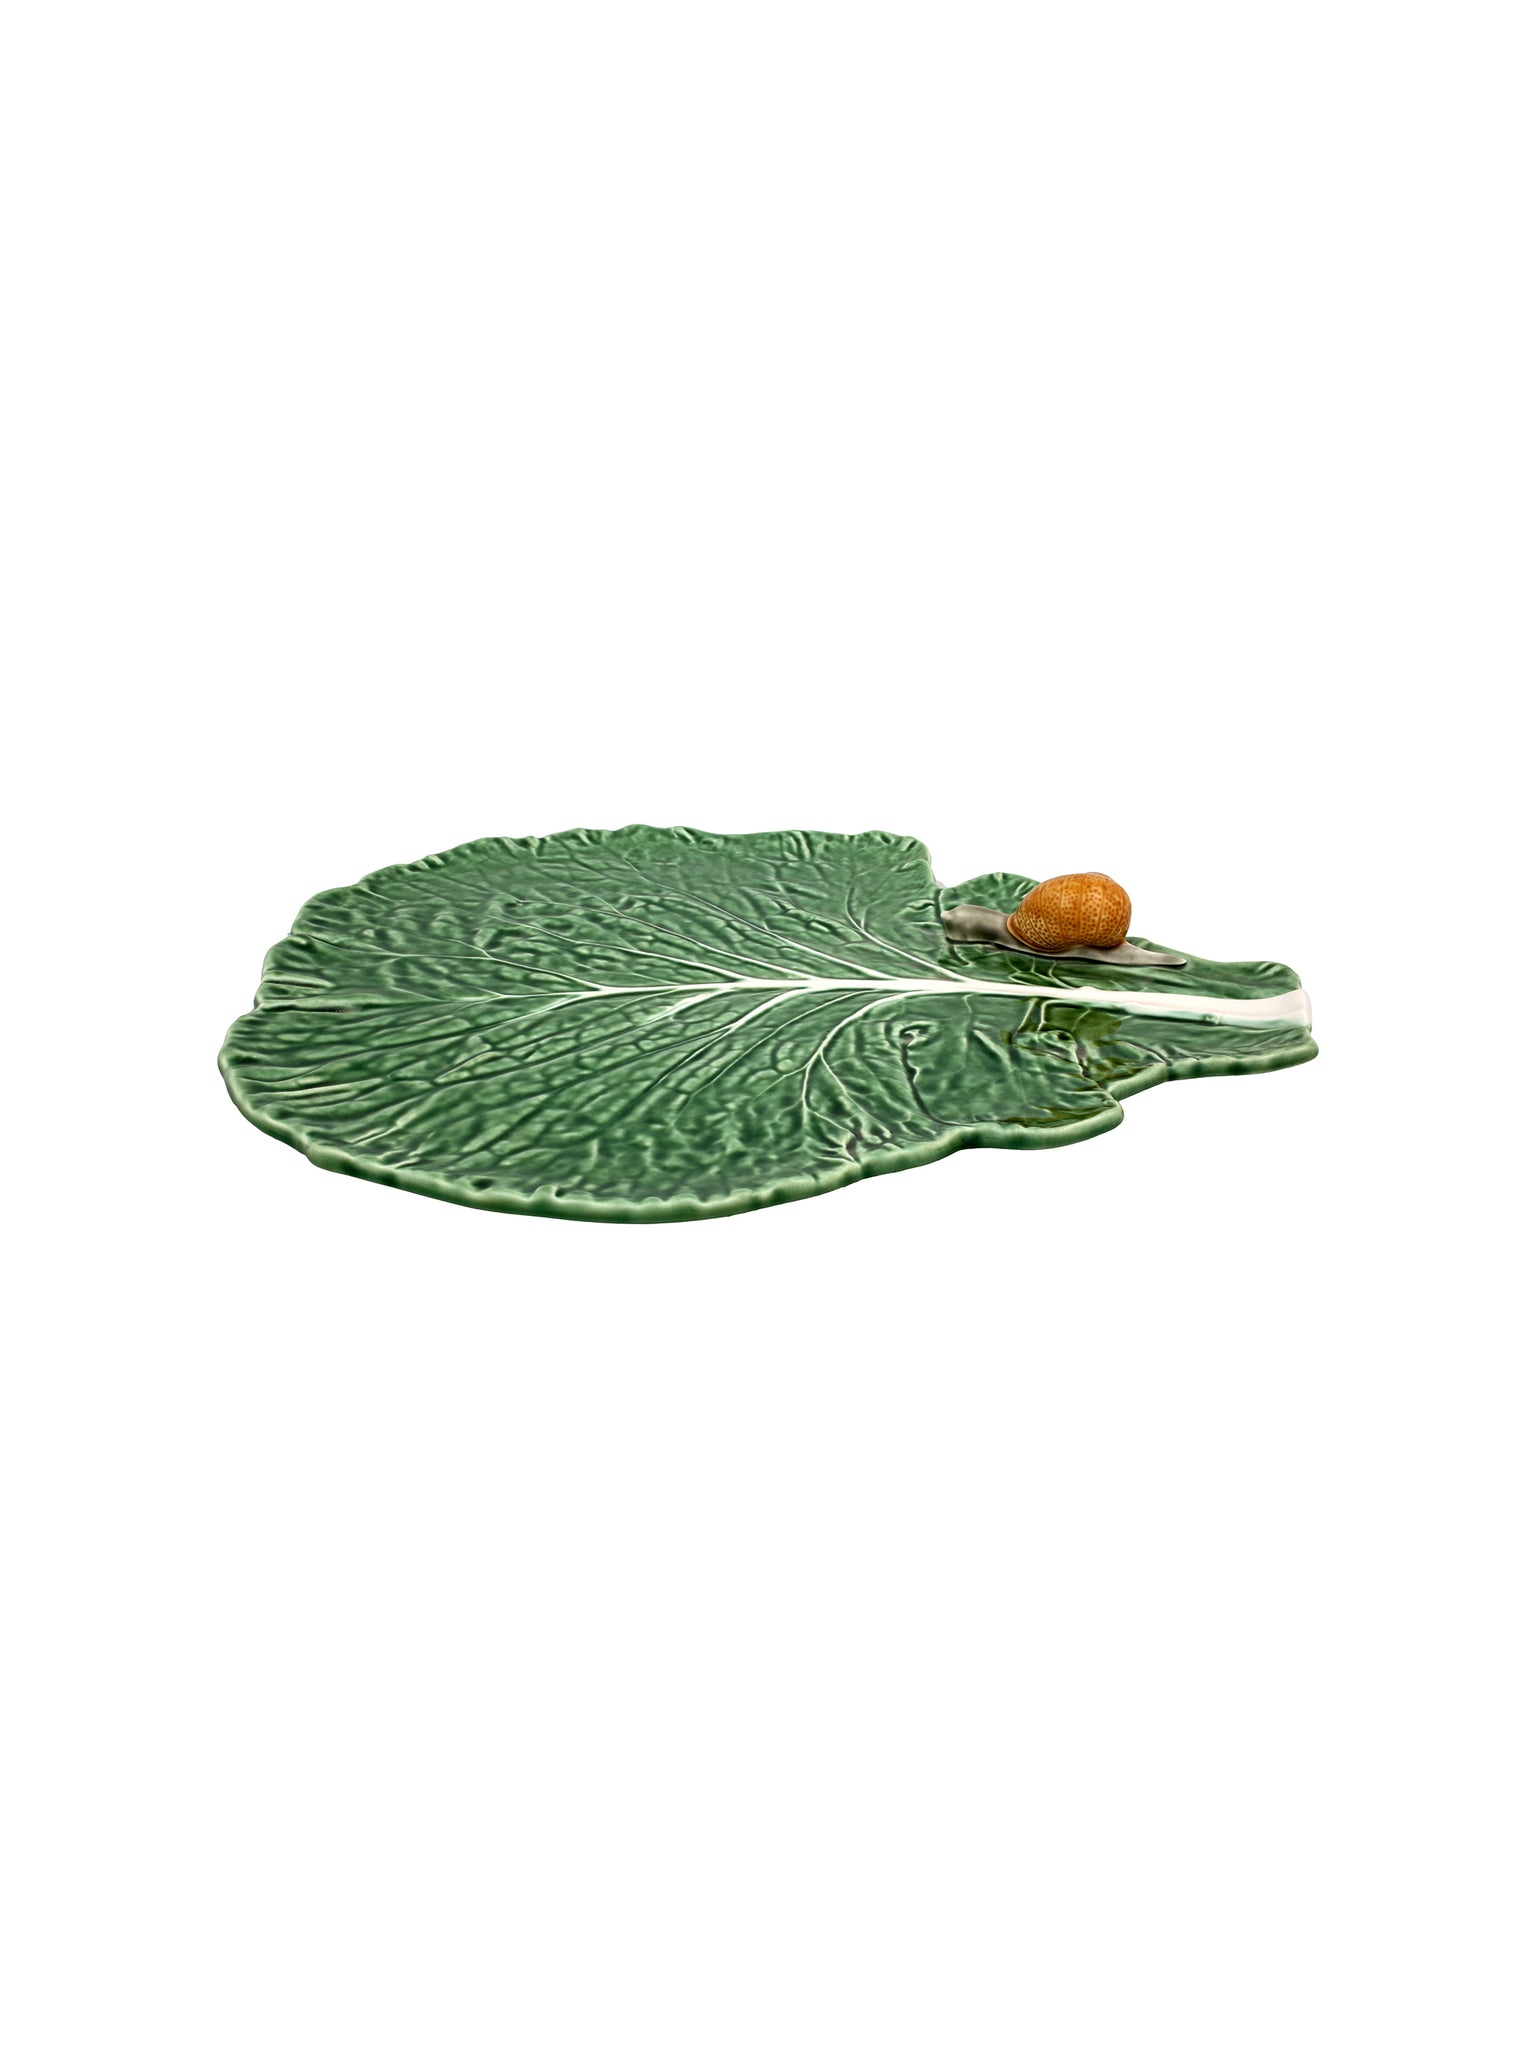 Bordallo Pinheiro Cabbage Leaf with Snail Weston Table